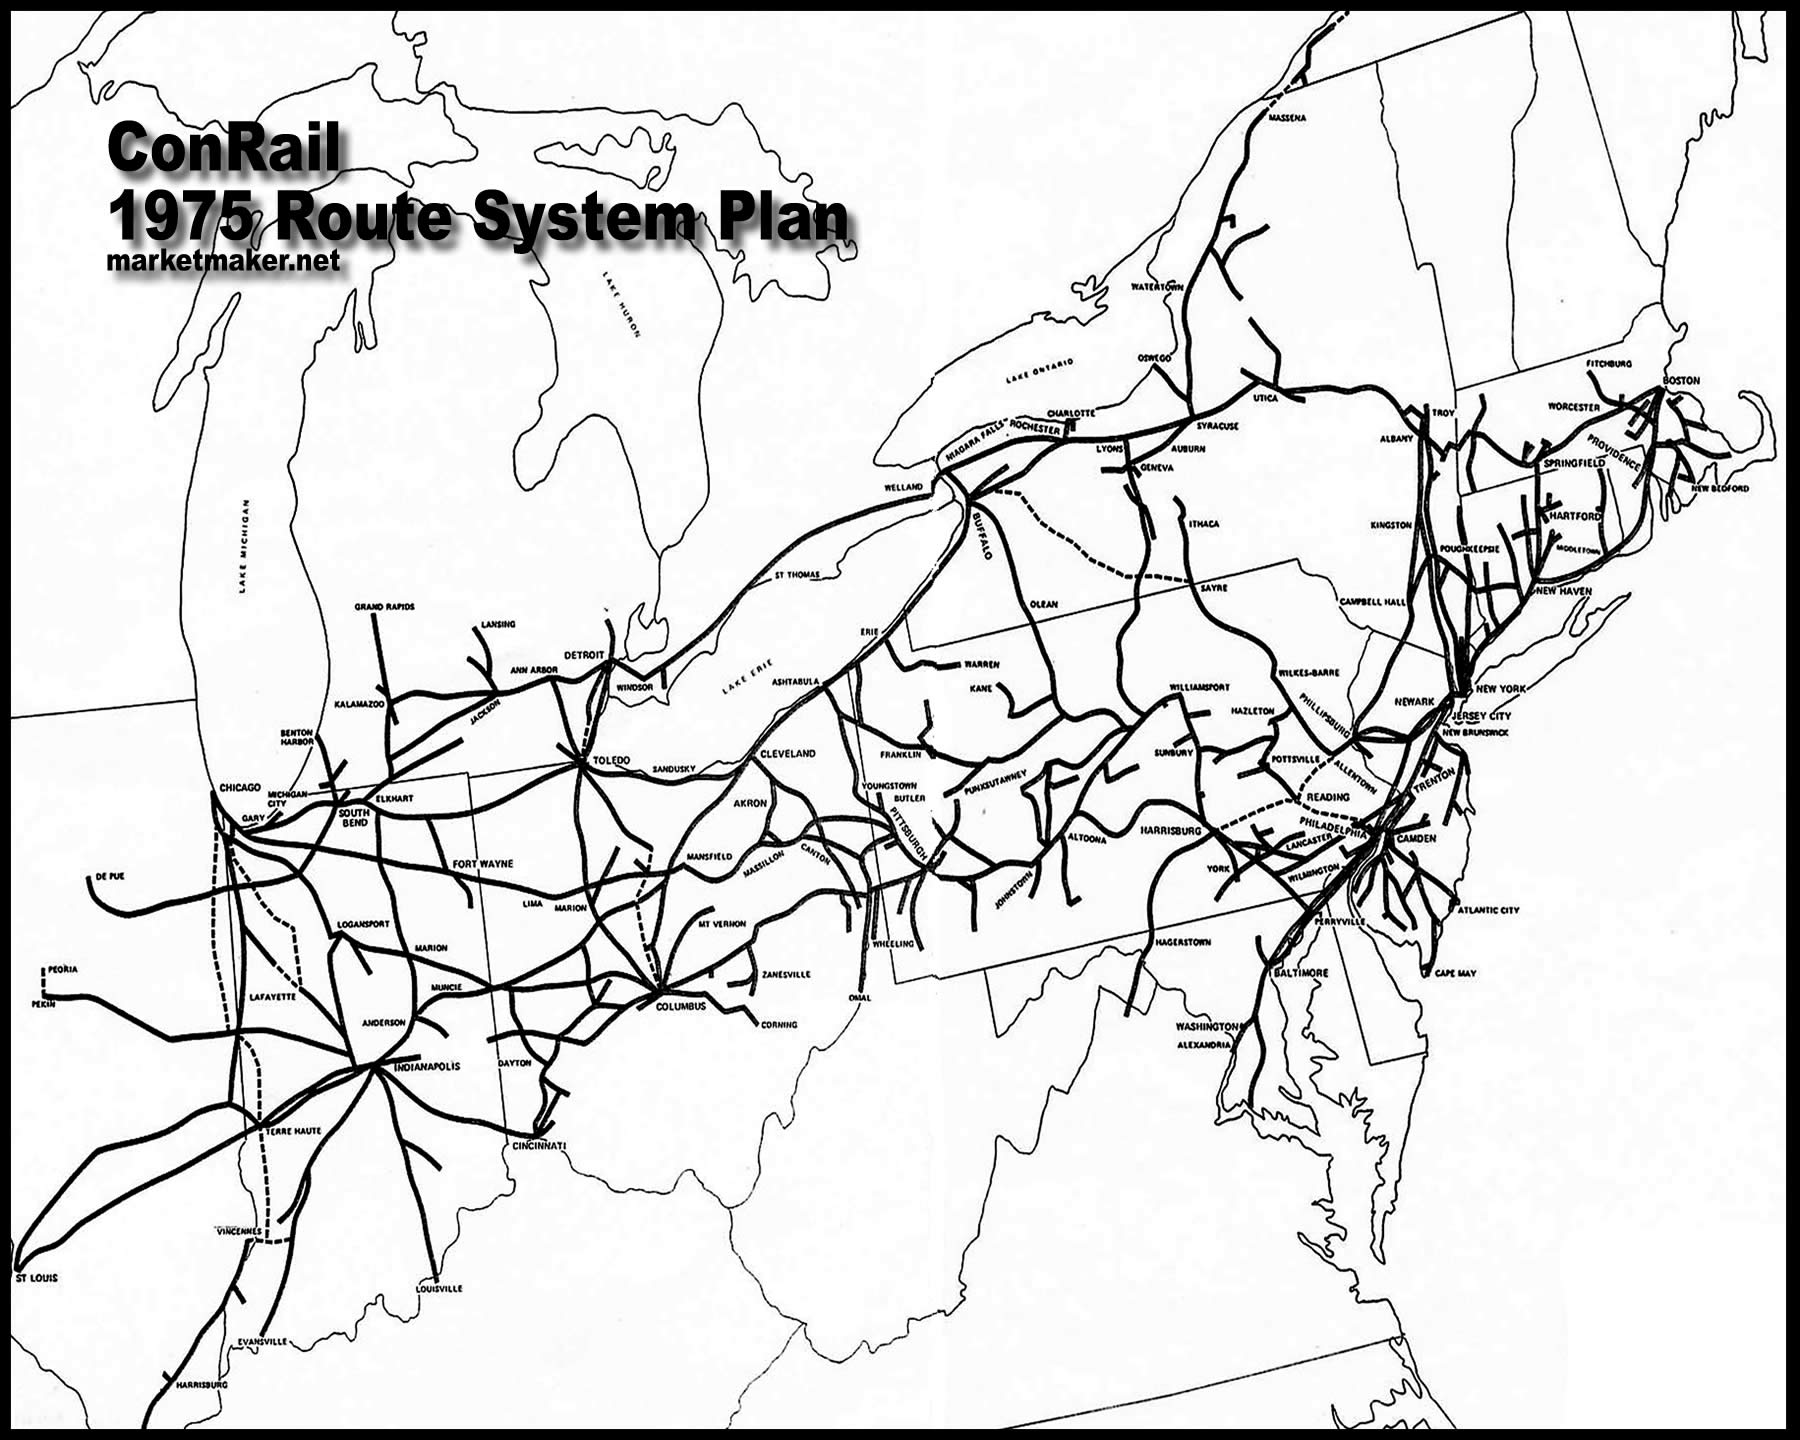 Transportation Company - Conrail - Railroad